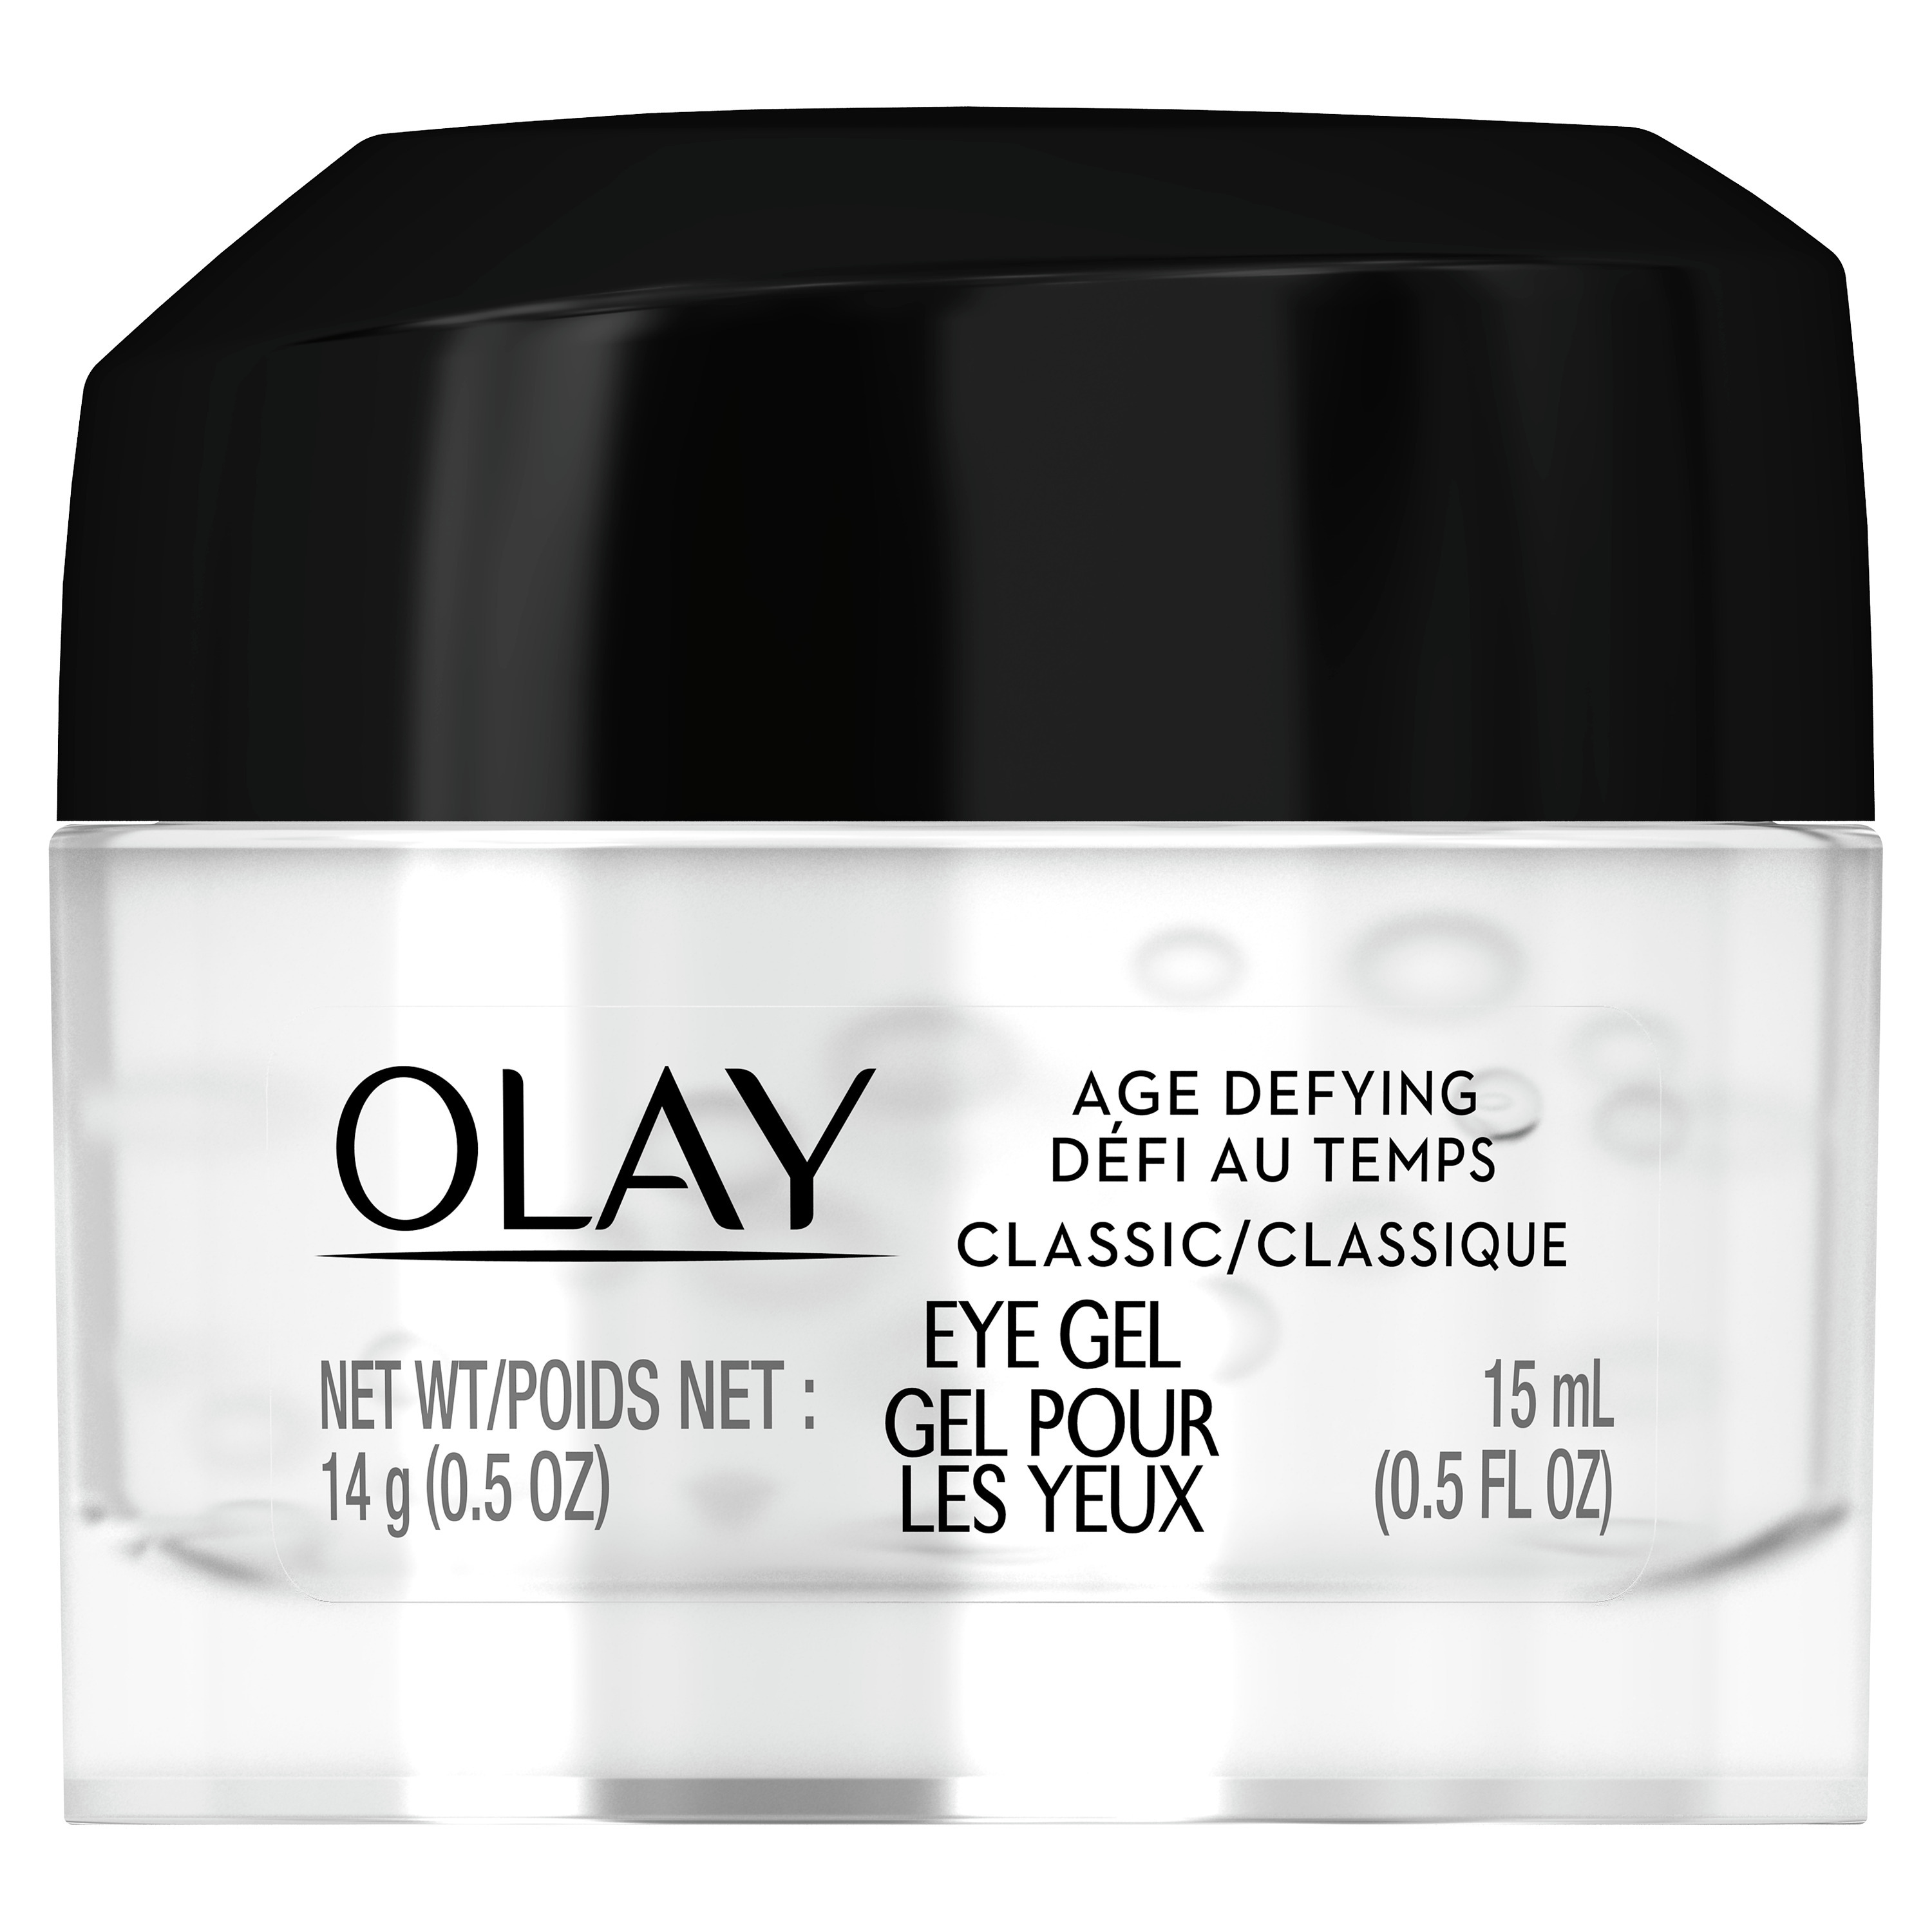 Olay Age Defying Classic Eye Gel, 0.5 oz - image 1 of 6